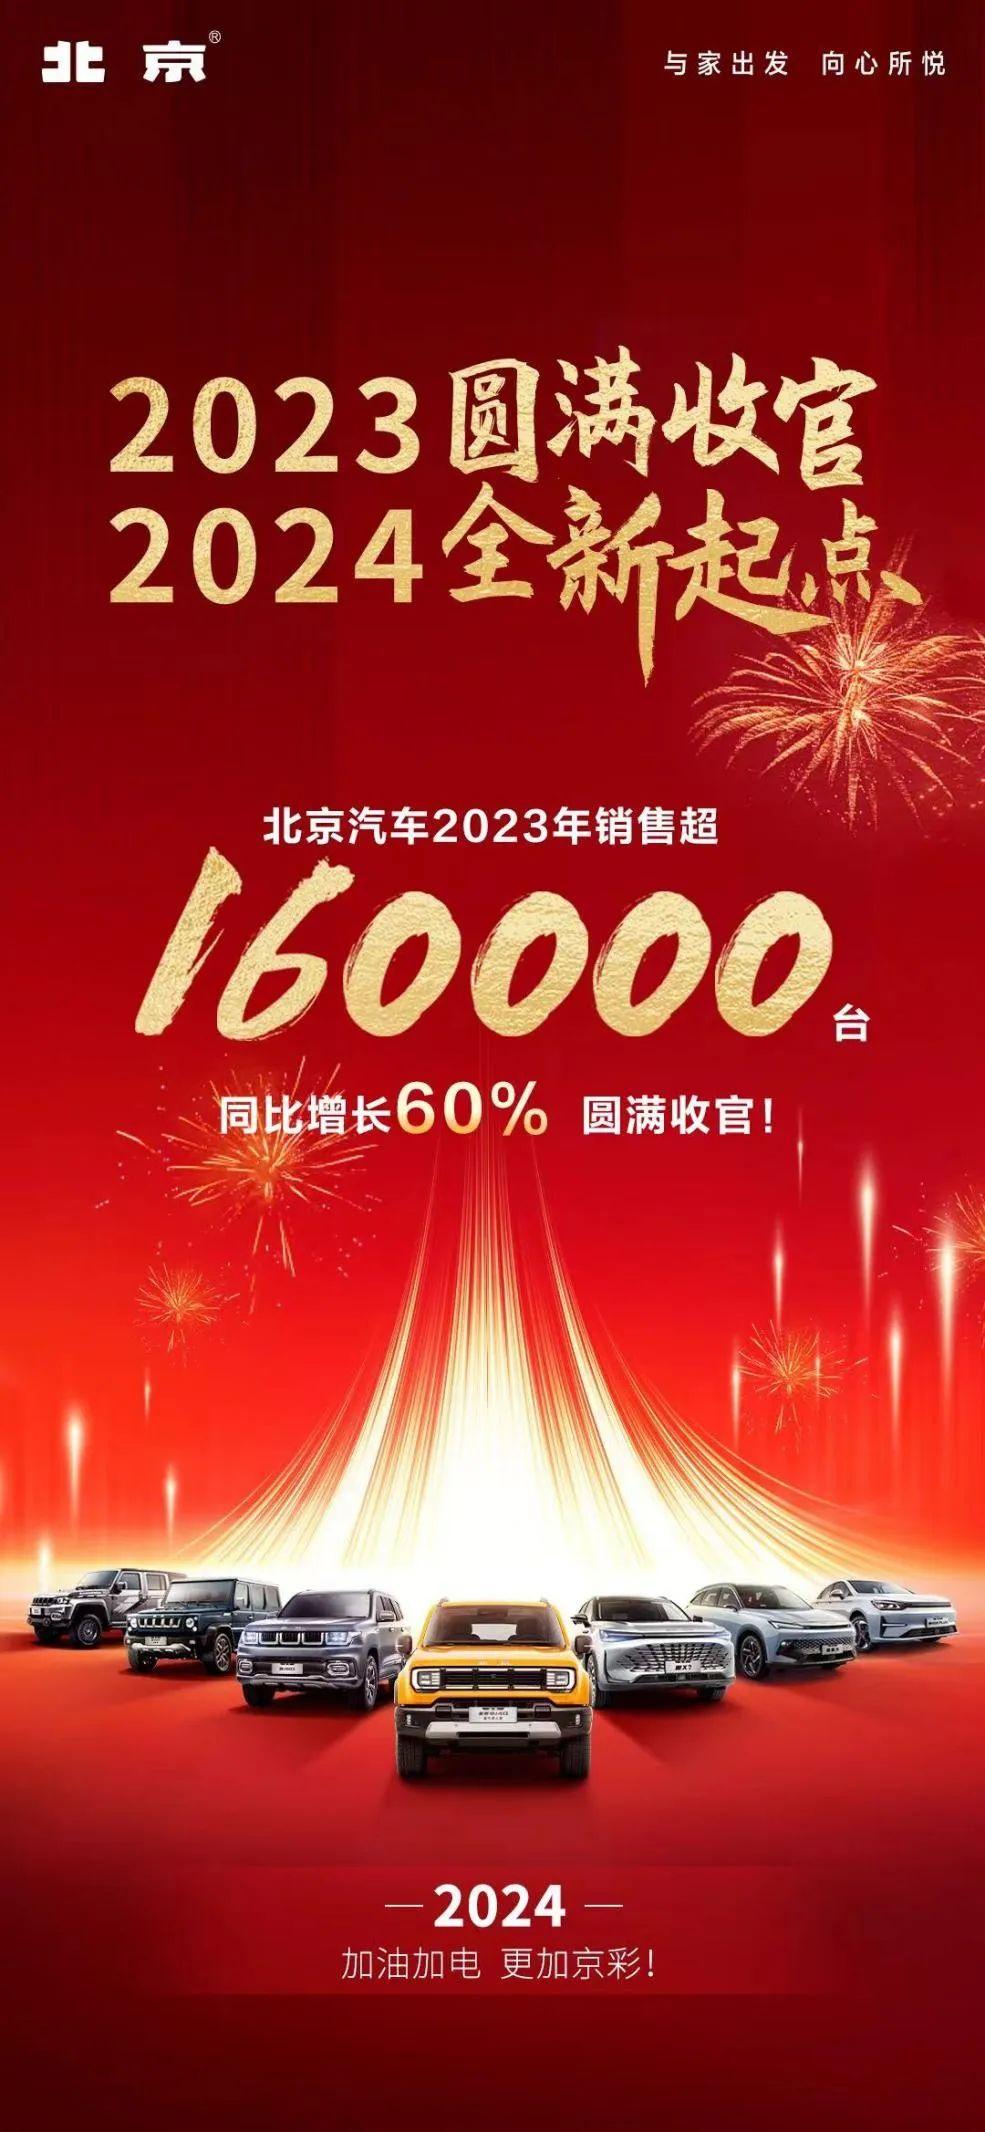 2023北京汽车以年销超16万辆的佳绩圆满收官，2024新程再启